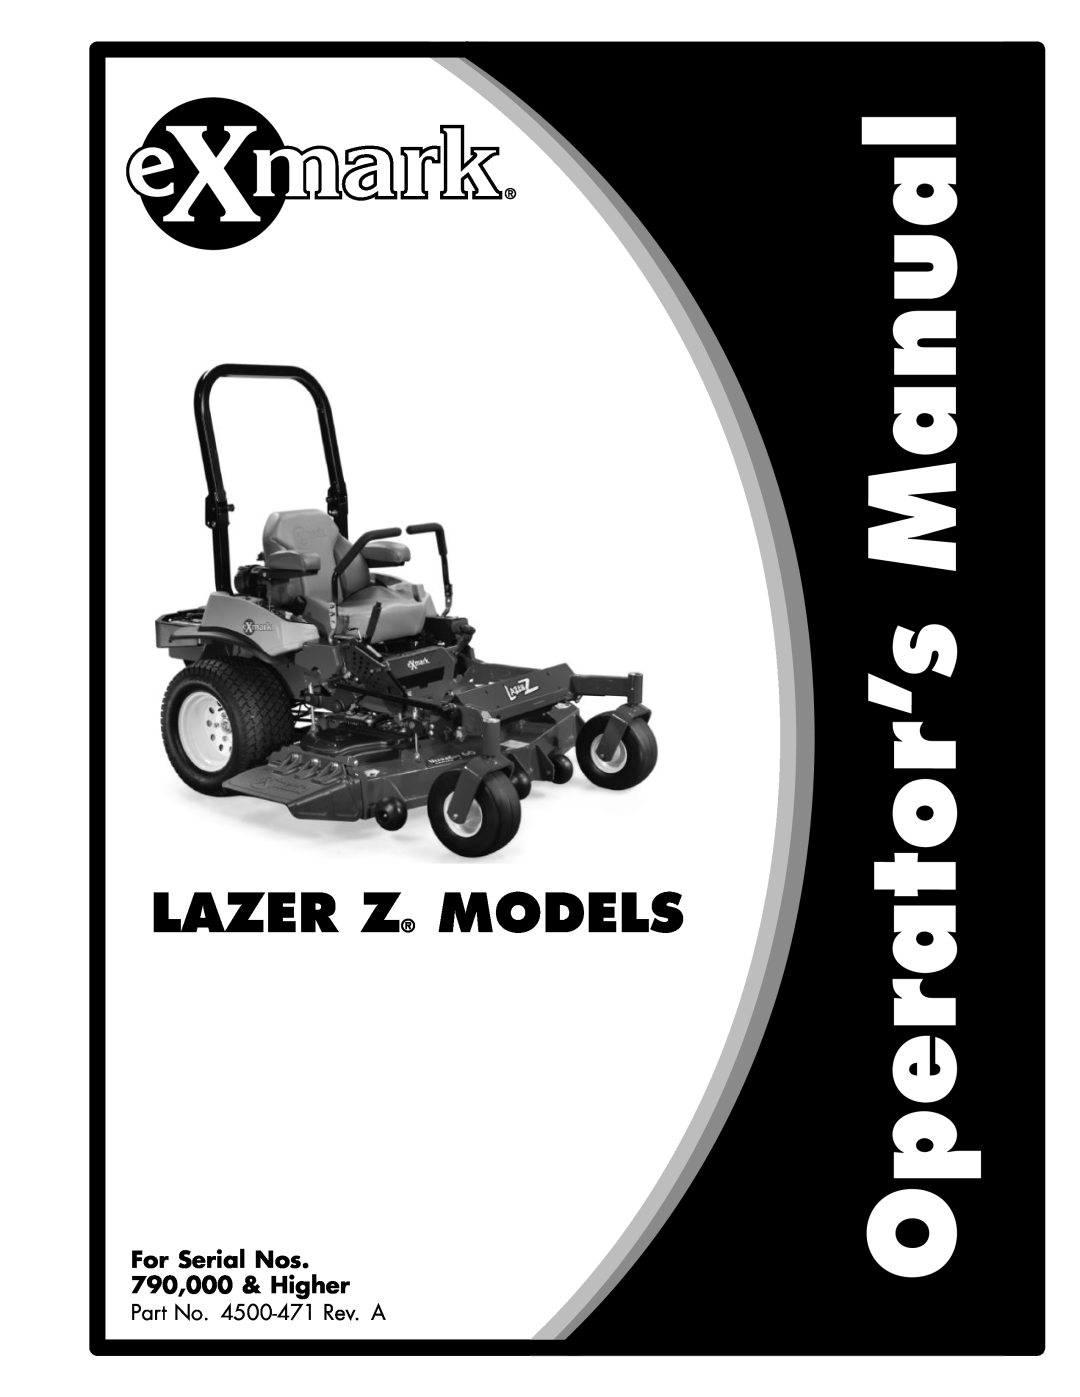 Exmark manual Lazer Z S-Series, For Serial Nos 312,000,000 & Higher, Lazer Z LZS Units, Part No. 4501-199Rev. A 